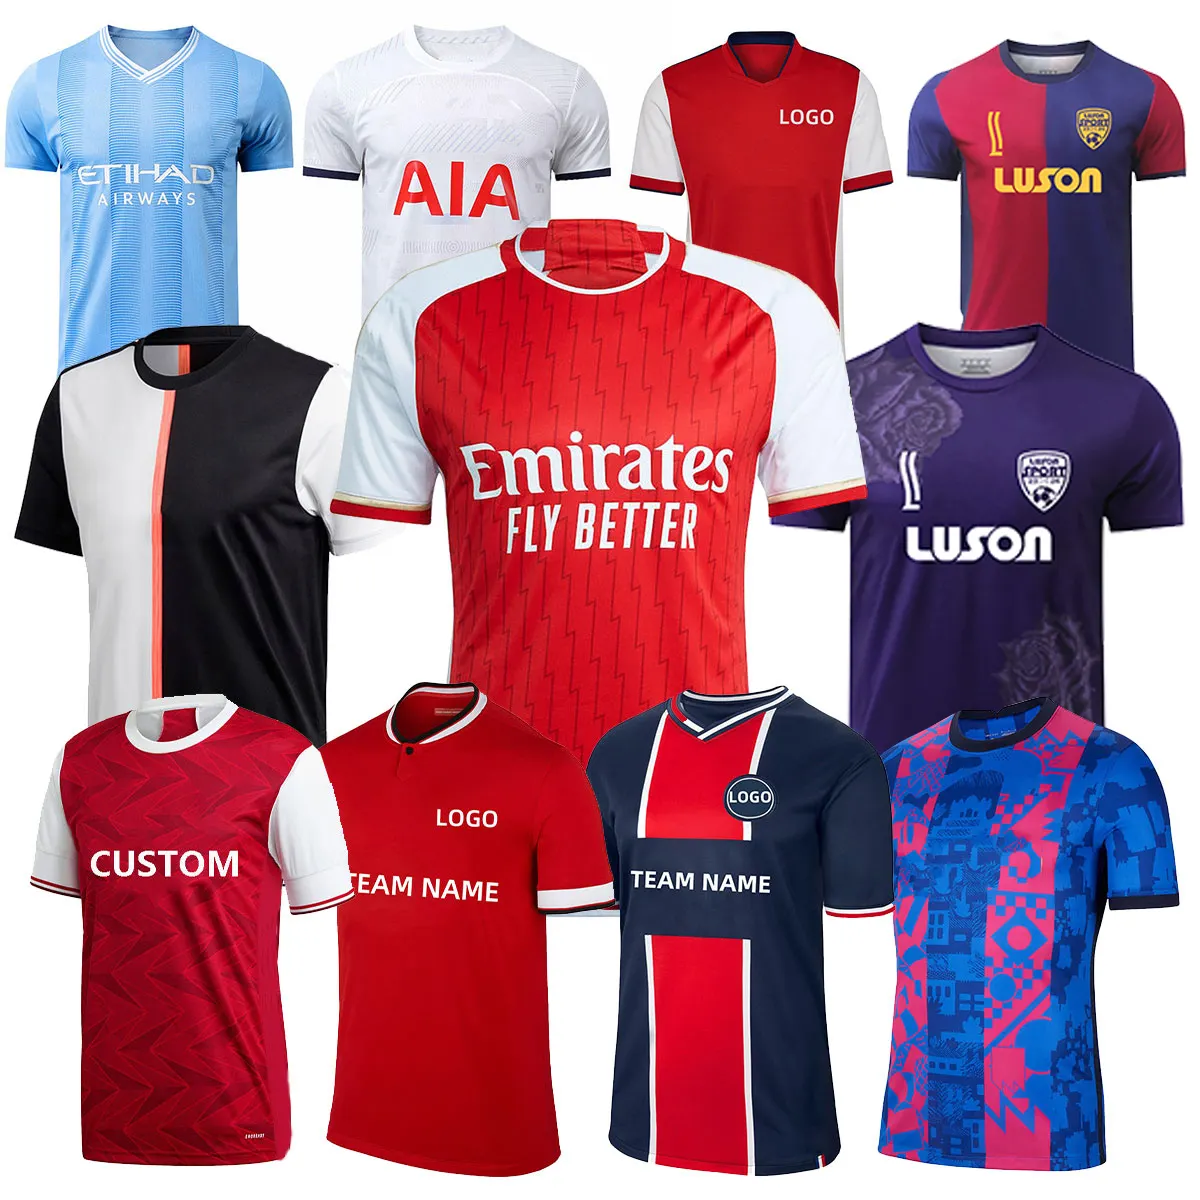 LUSON, nuevo Kit de entrenamiento de fútbol, camiseta de fútbol de Club, calidad Original para equipo y Club, camisetas de fútbol personalizadas